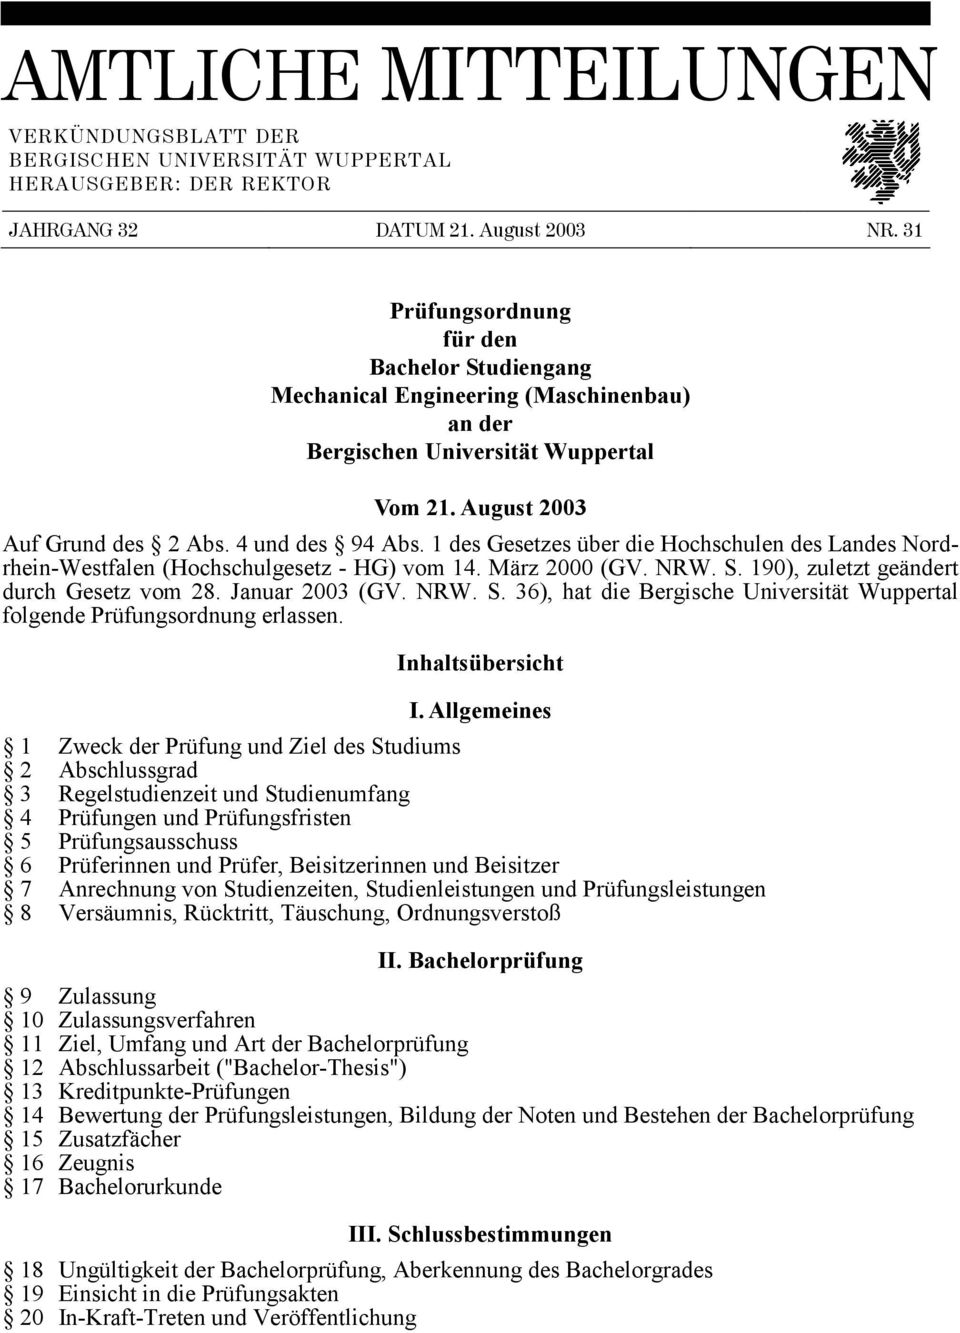 1 des Gesetzes über die Hochschulen des Landes Nordrhein-Westfalen (Hochschulgesetz - HG) vom 14. März 2000 (GV. NRW. S. 190), zuletzt geändert durch Gesetz vom 28. Januar 2003 (GV. NRW. S. 36), hat die Bergische Universität Wuppertal folgende Prüfungsordnung erlassen.